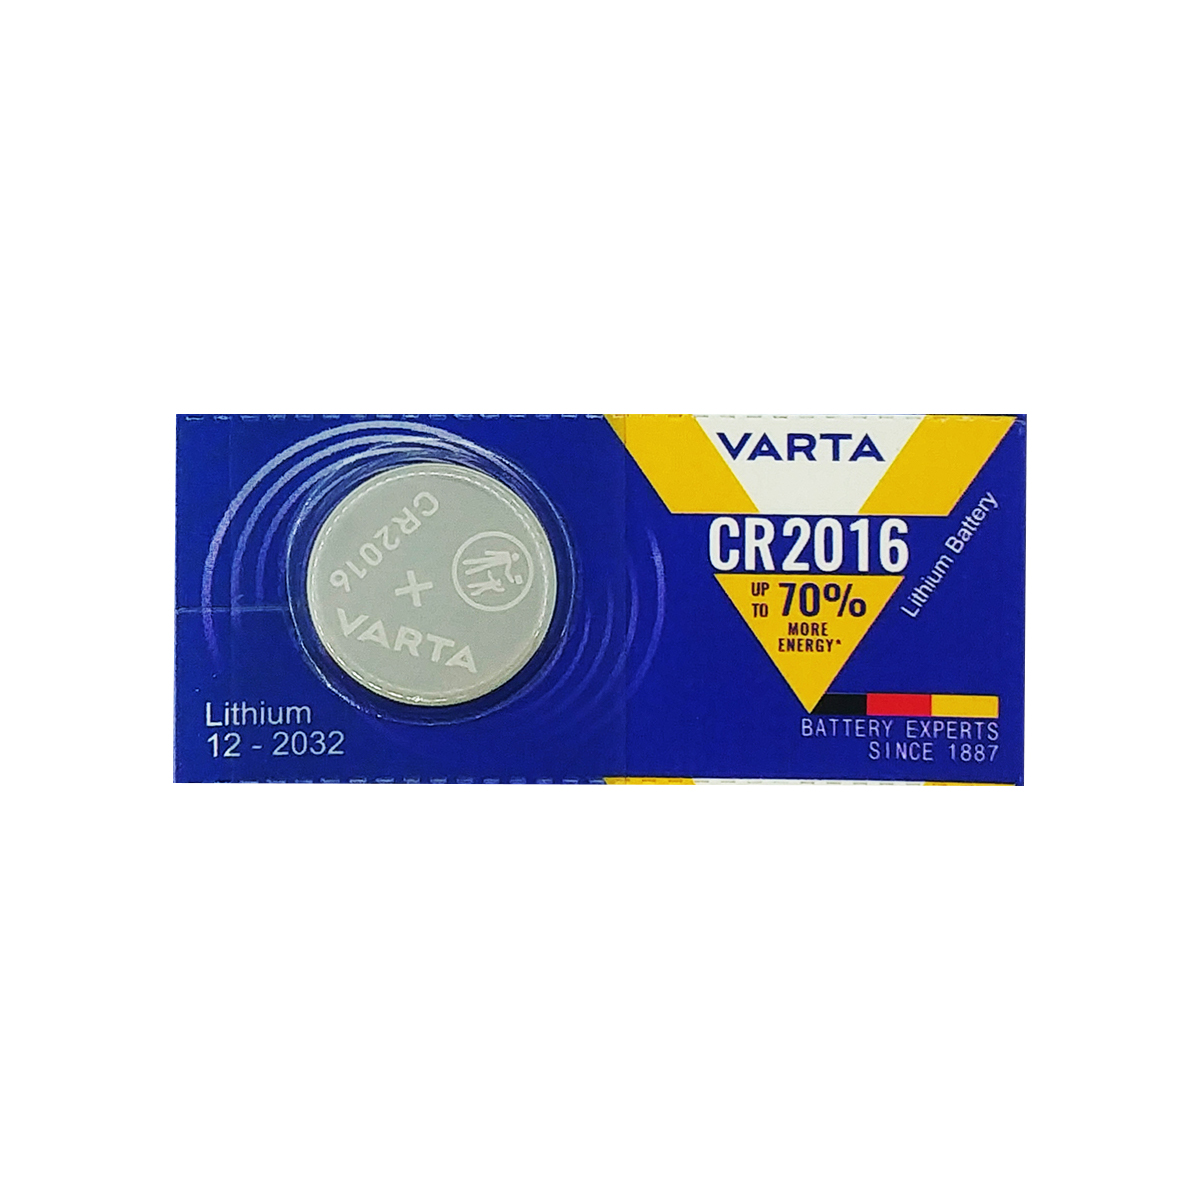 باتری سکه ای وارتا مدل CR 2016